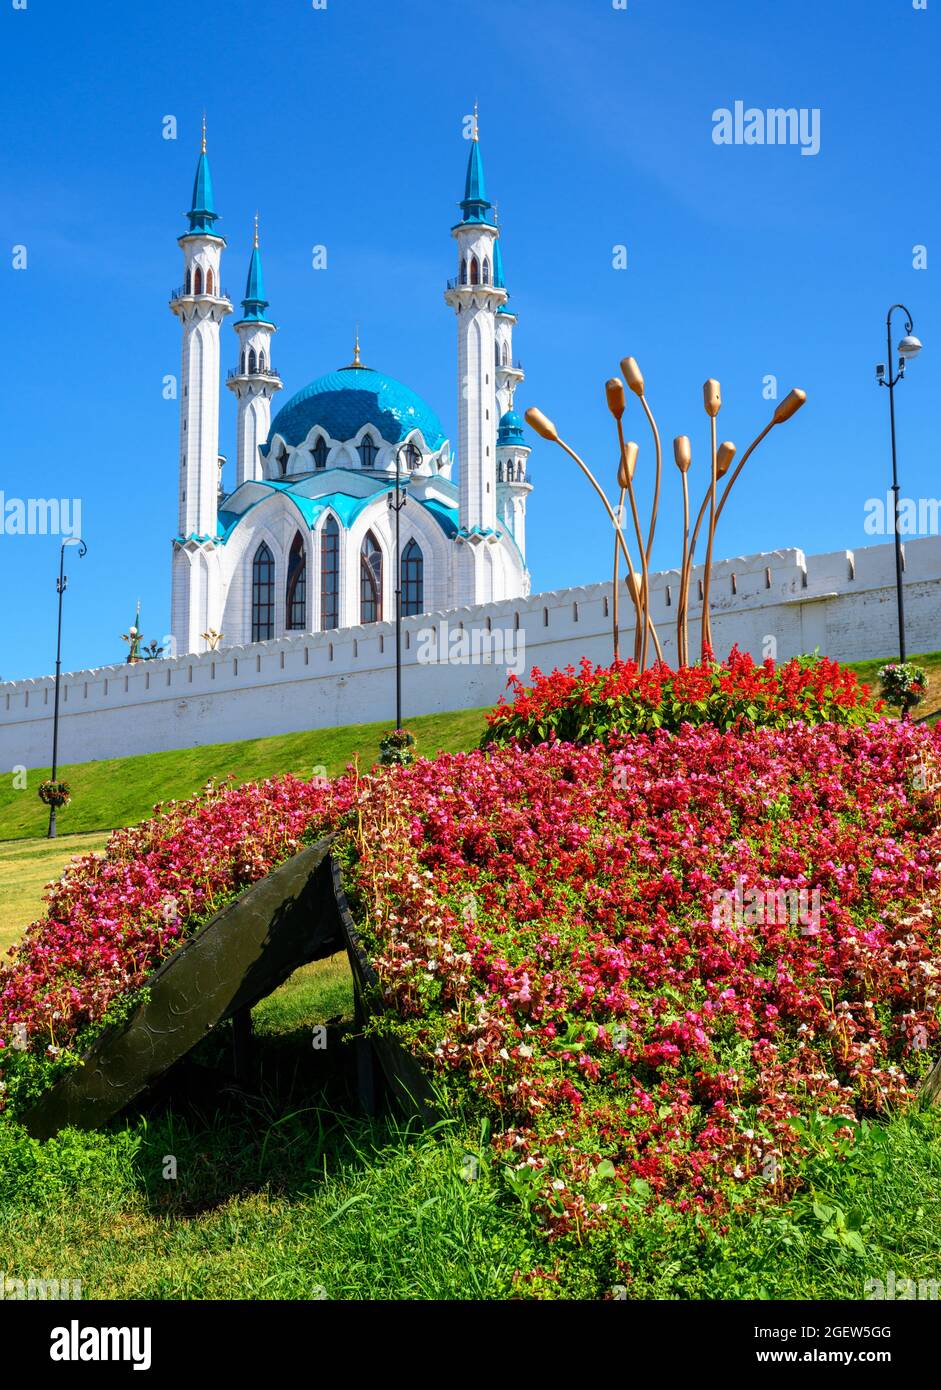 Cremlino di Kazan in estate, Tatarstan, Russia. Splendida vista panoramica della moschea di Kul Sharif, grande punto di riferimento di Kazan. Famosa attrazione turistica, l'ar islamico Foto Stock